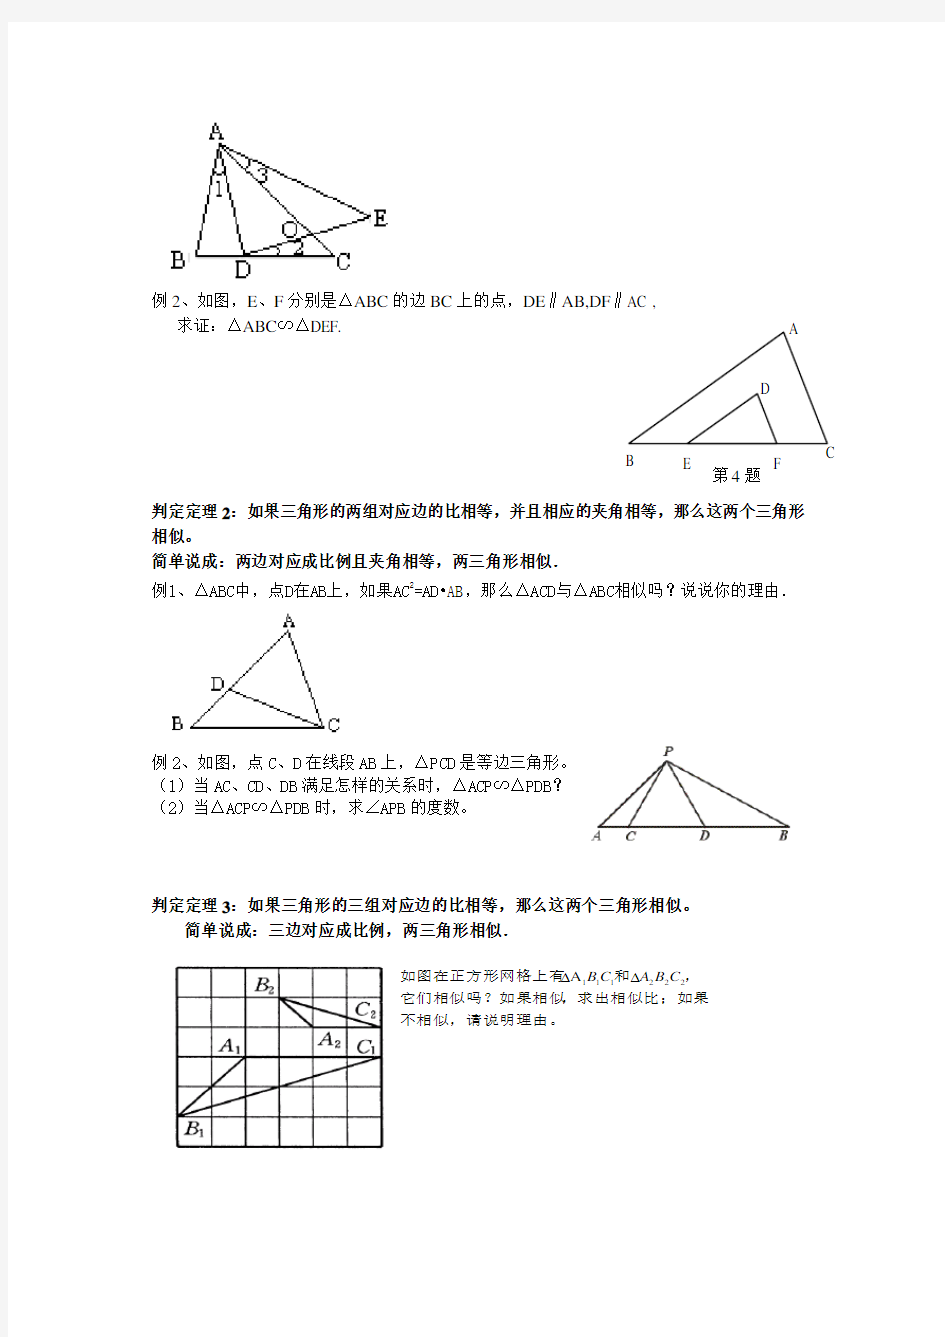 相似三角形的判定方法